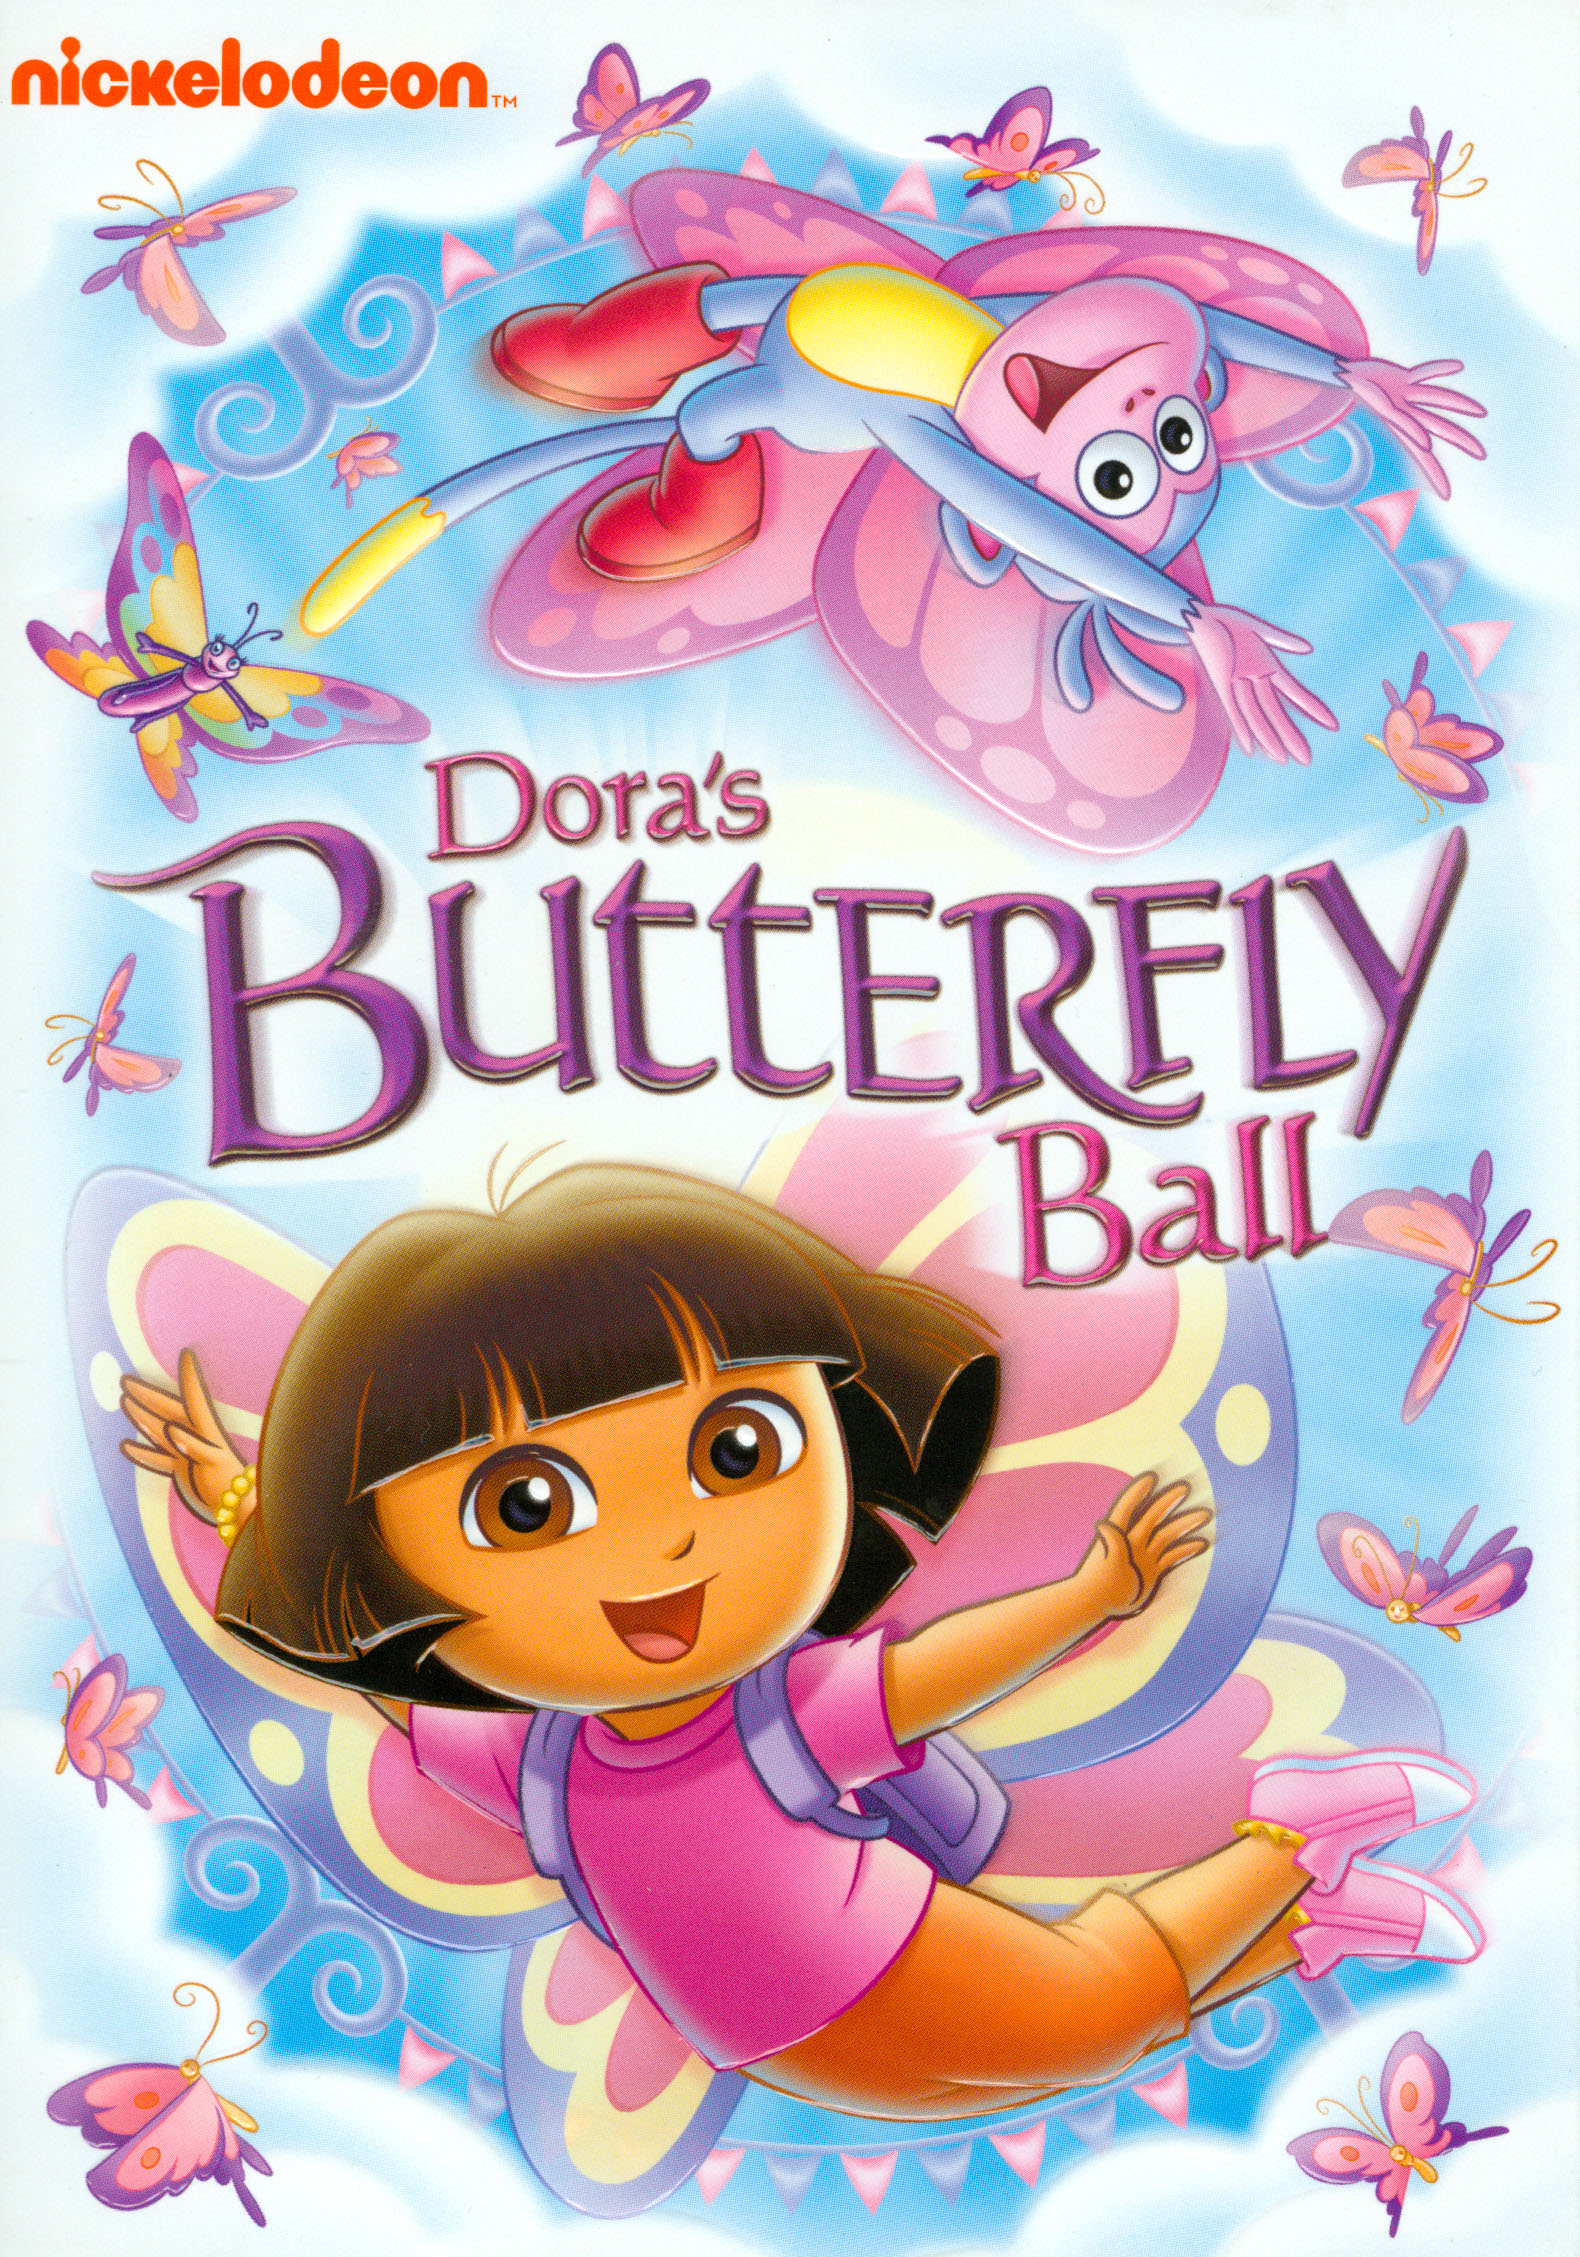 Dora the Explorer: Dora's Butterfly Ball DVD - Best Buy.